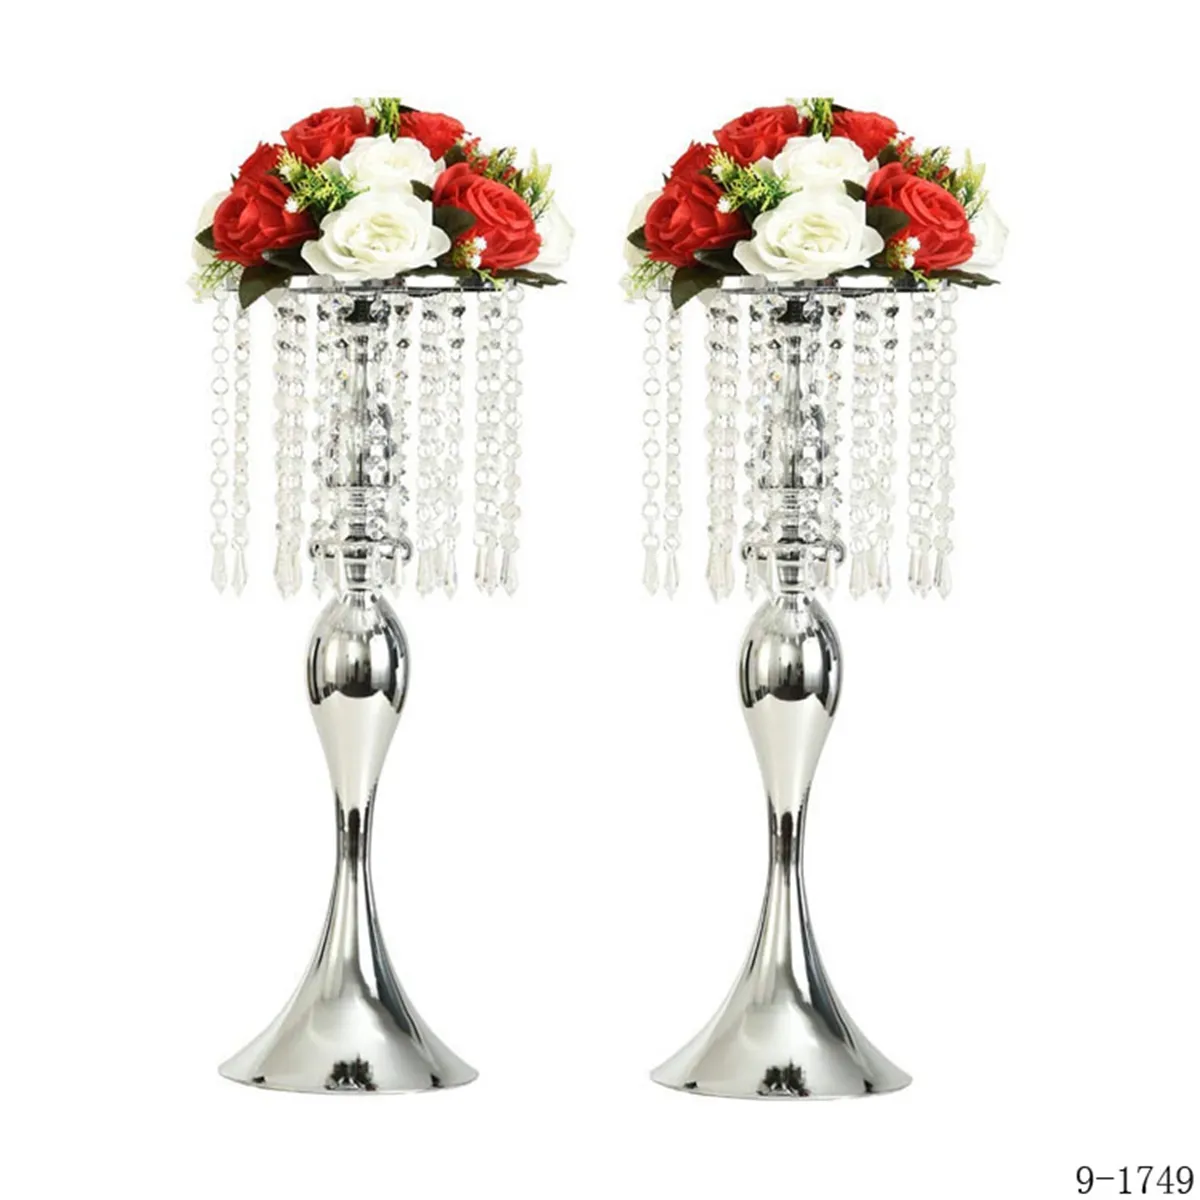 Décoration mariages fête route plomb fleur Table support cristal or Tables centres de mariage pour mariage décor 070